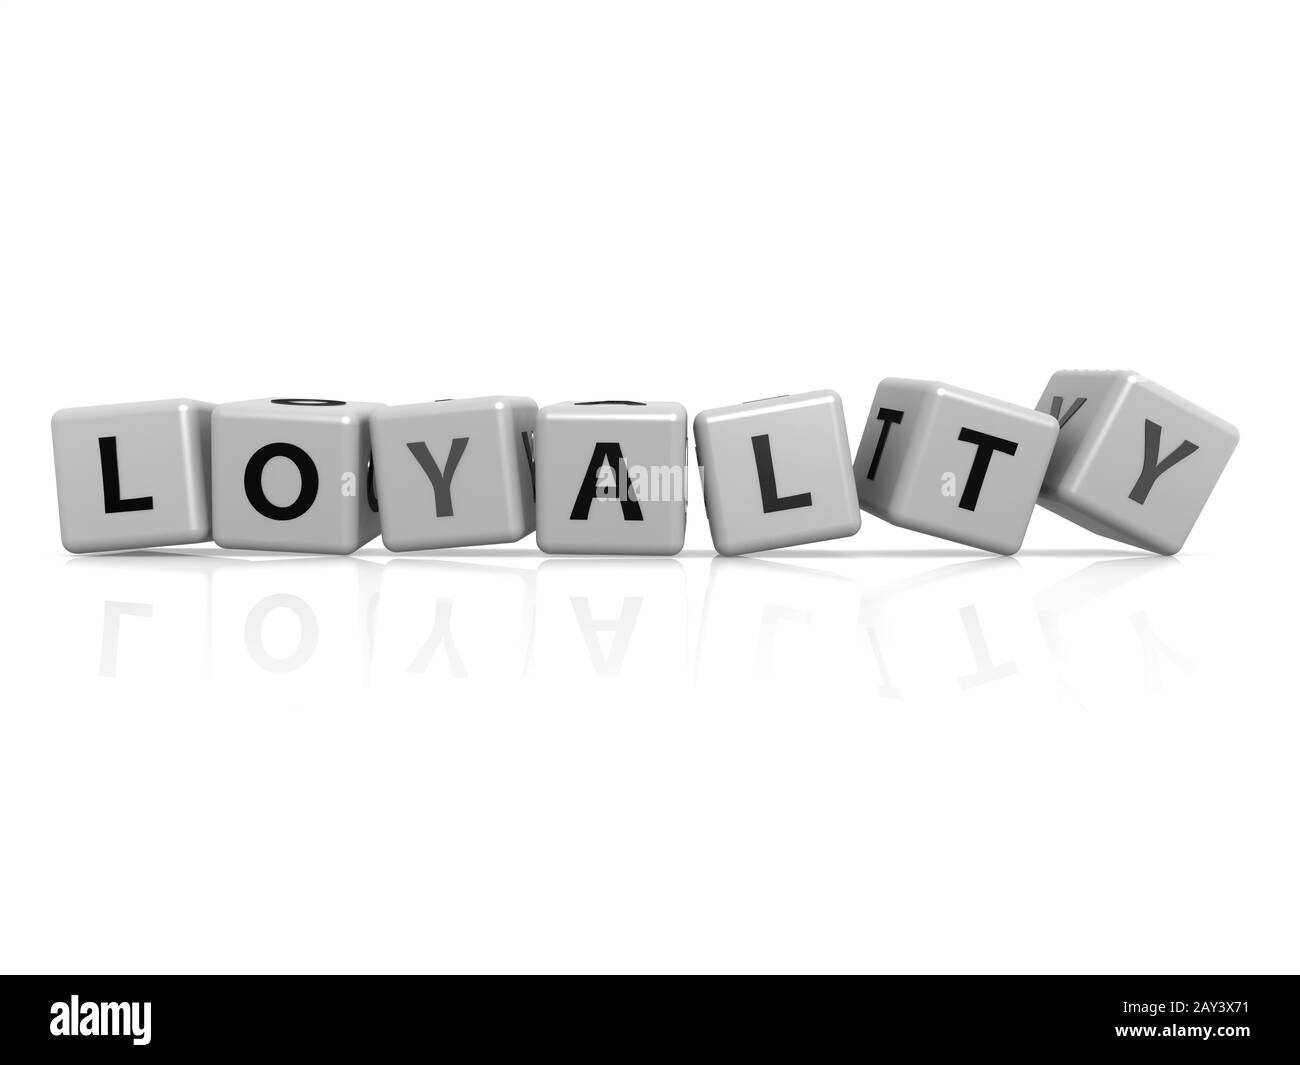 Loyalty  buzzword Stock Photo